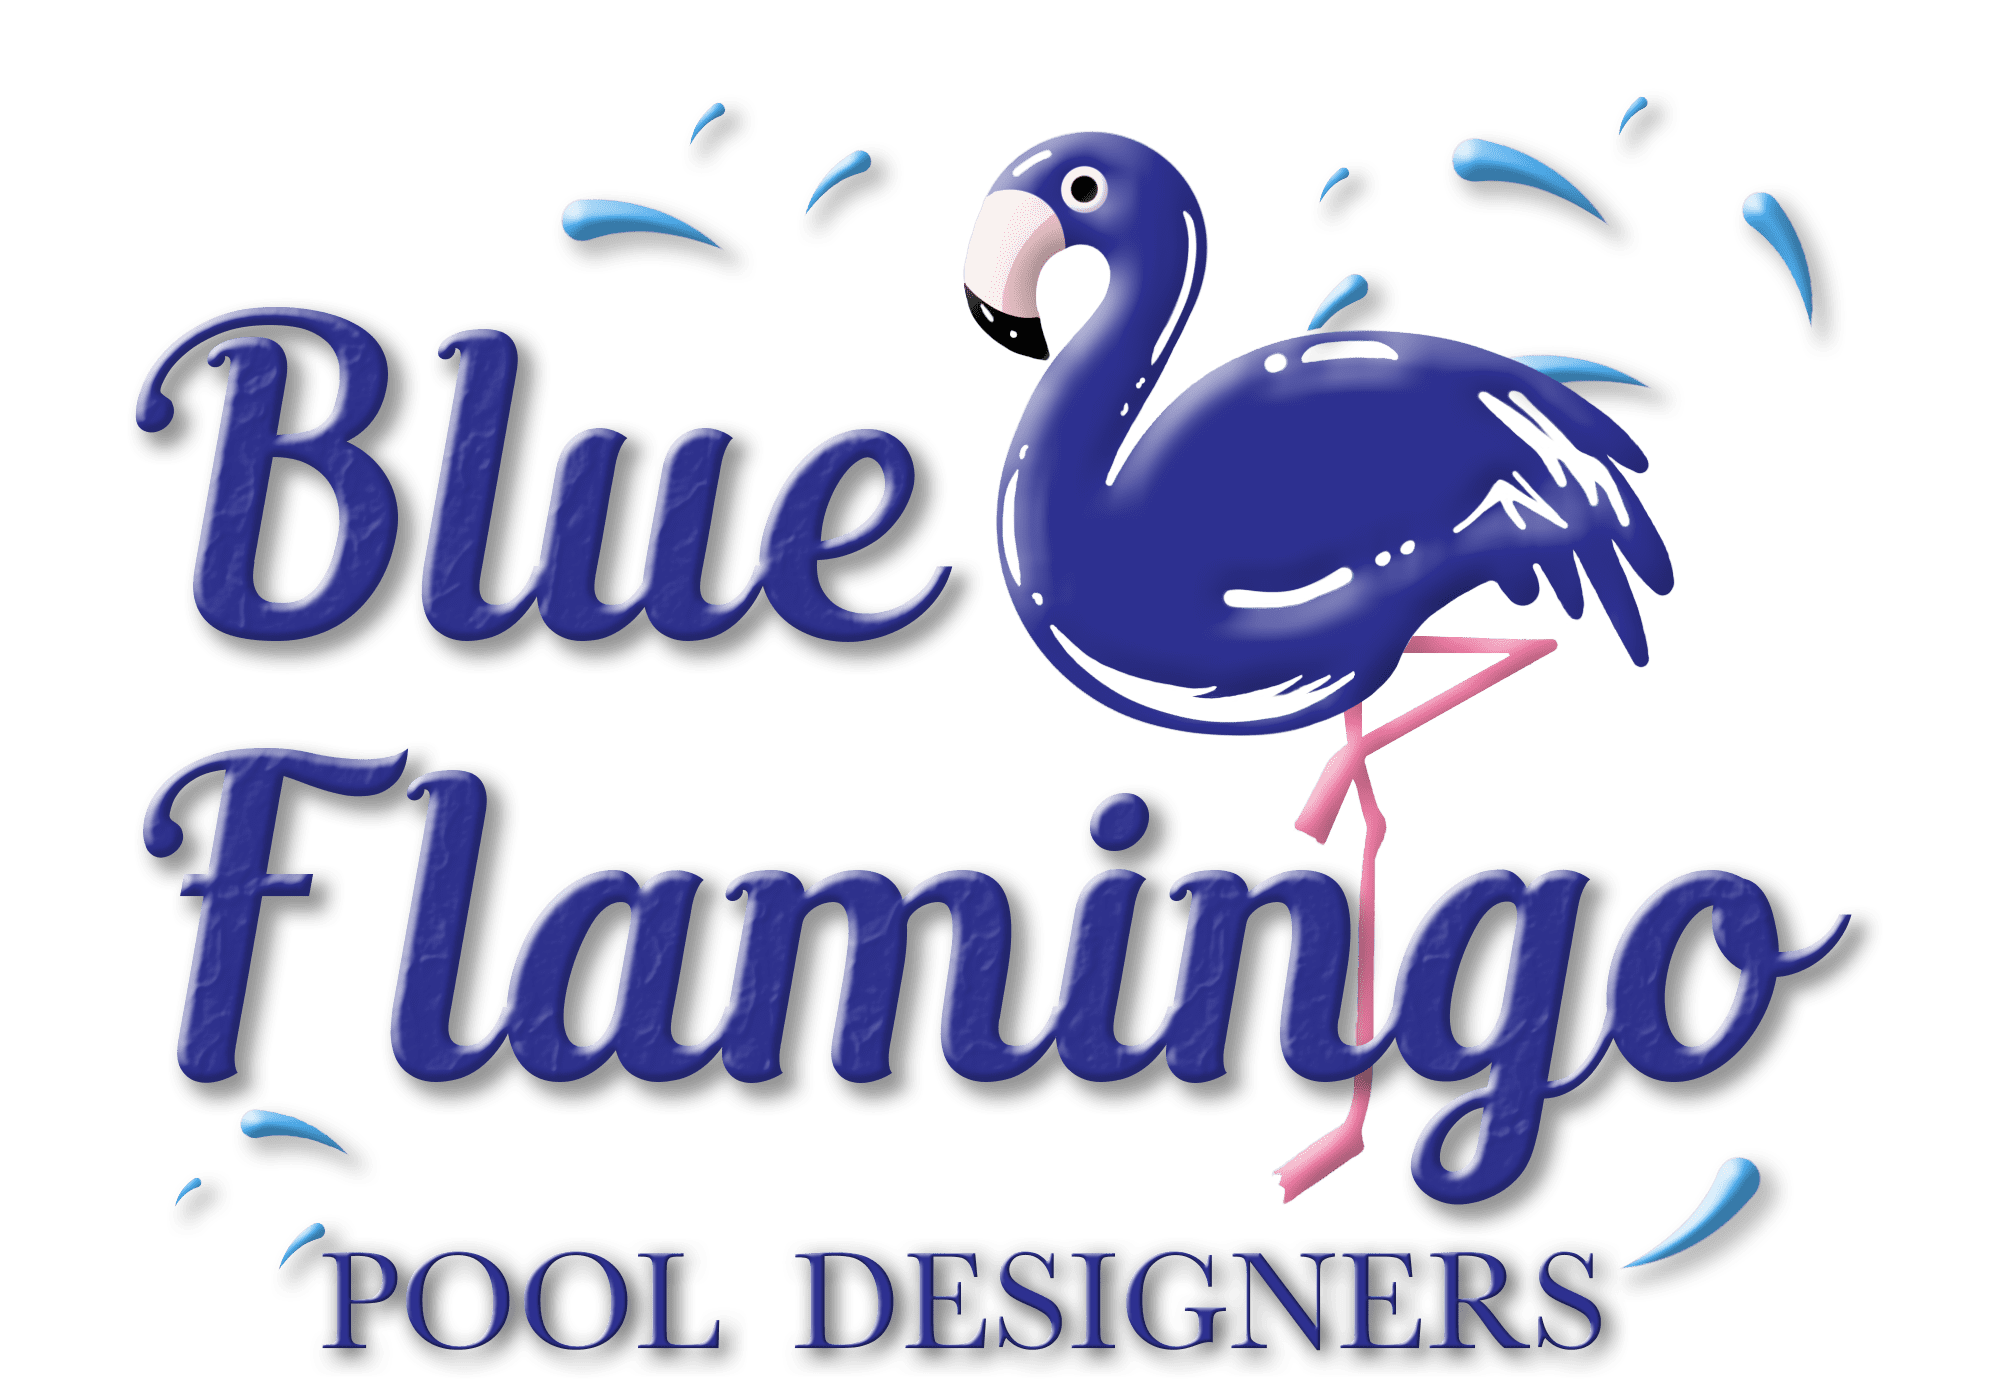 BlueFlamingoLogoDesigners